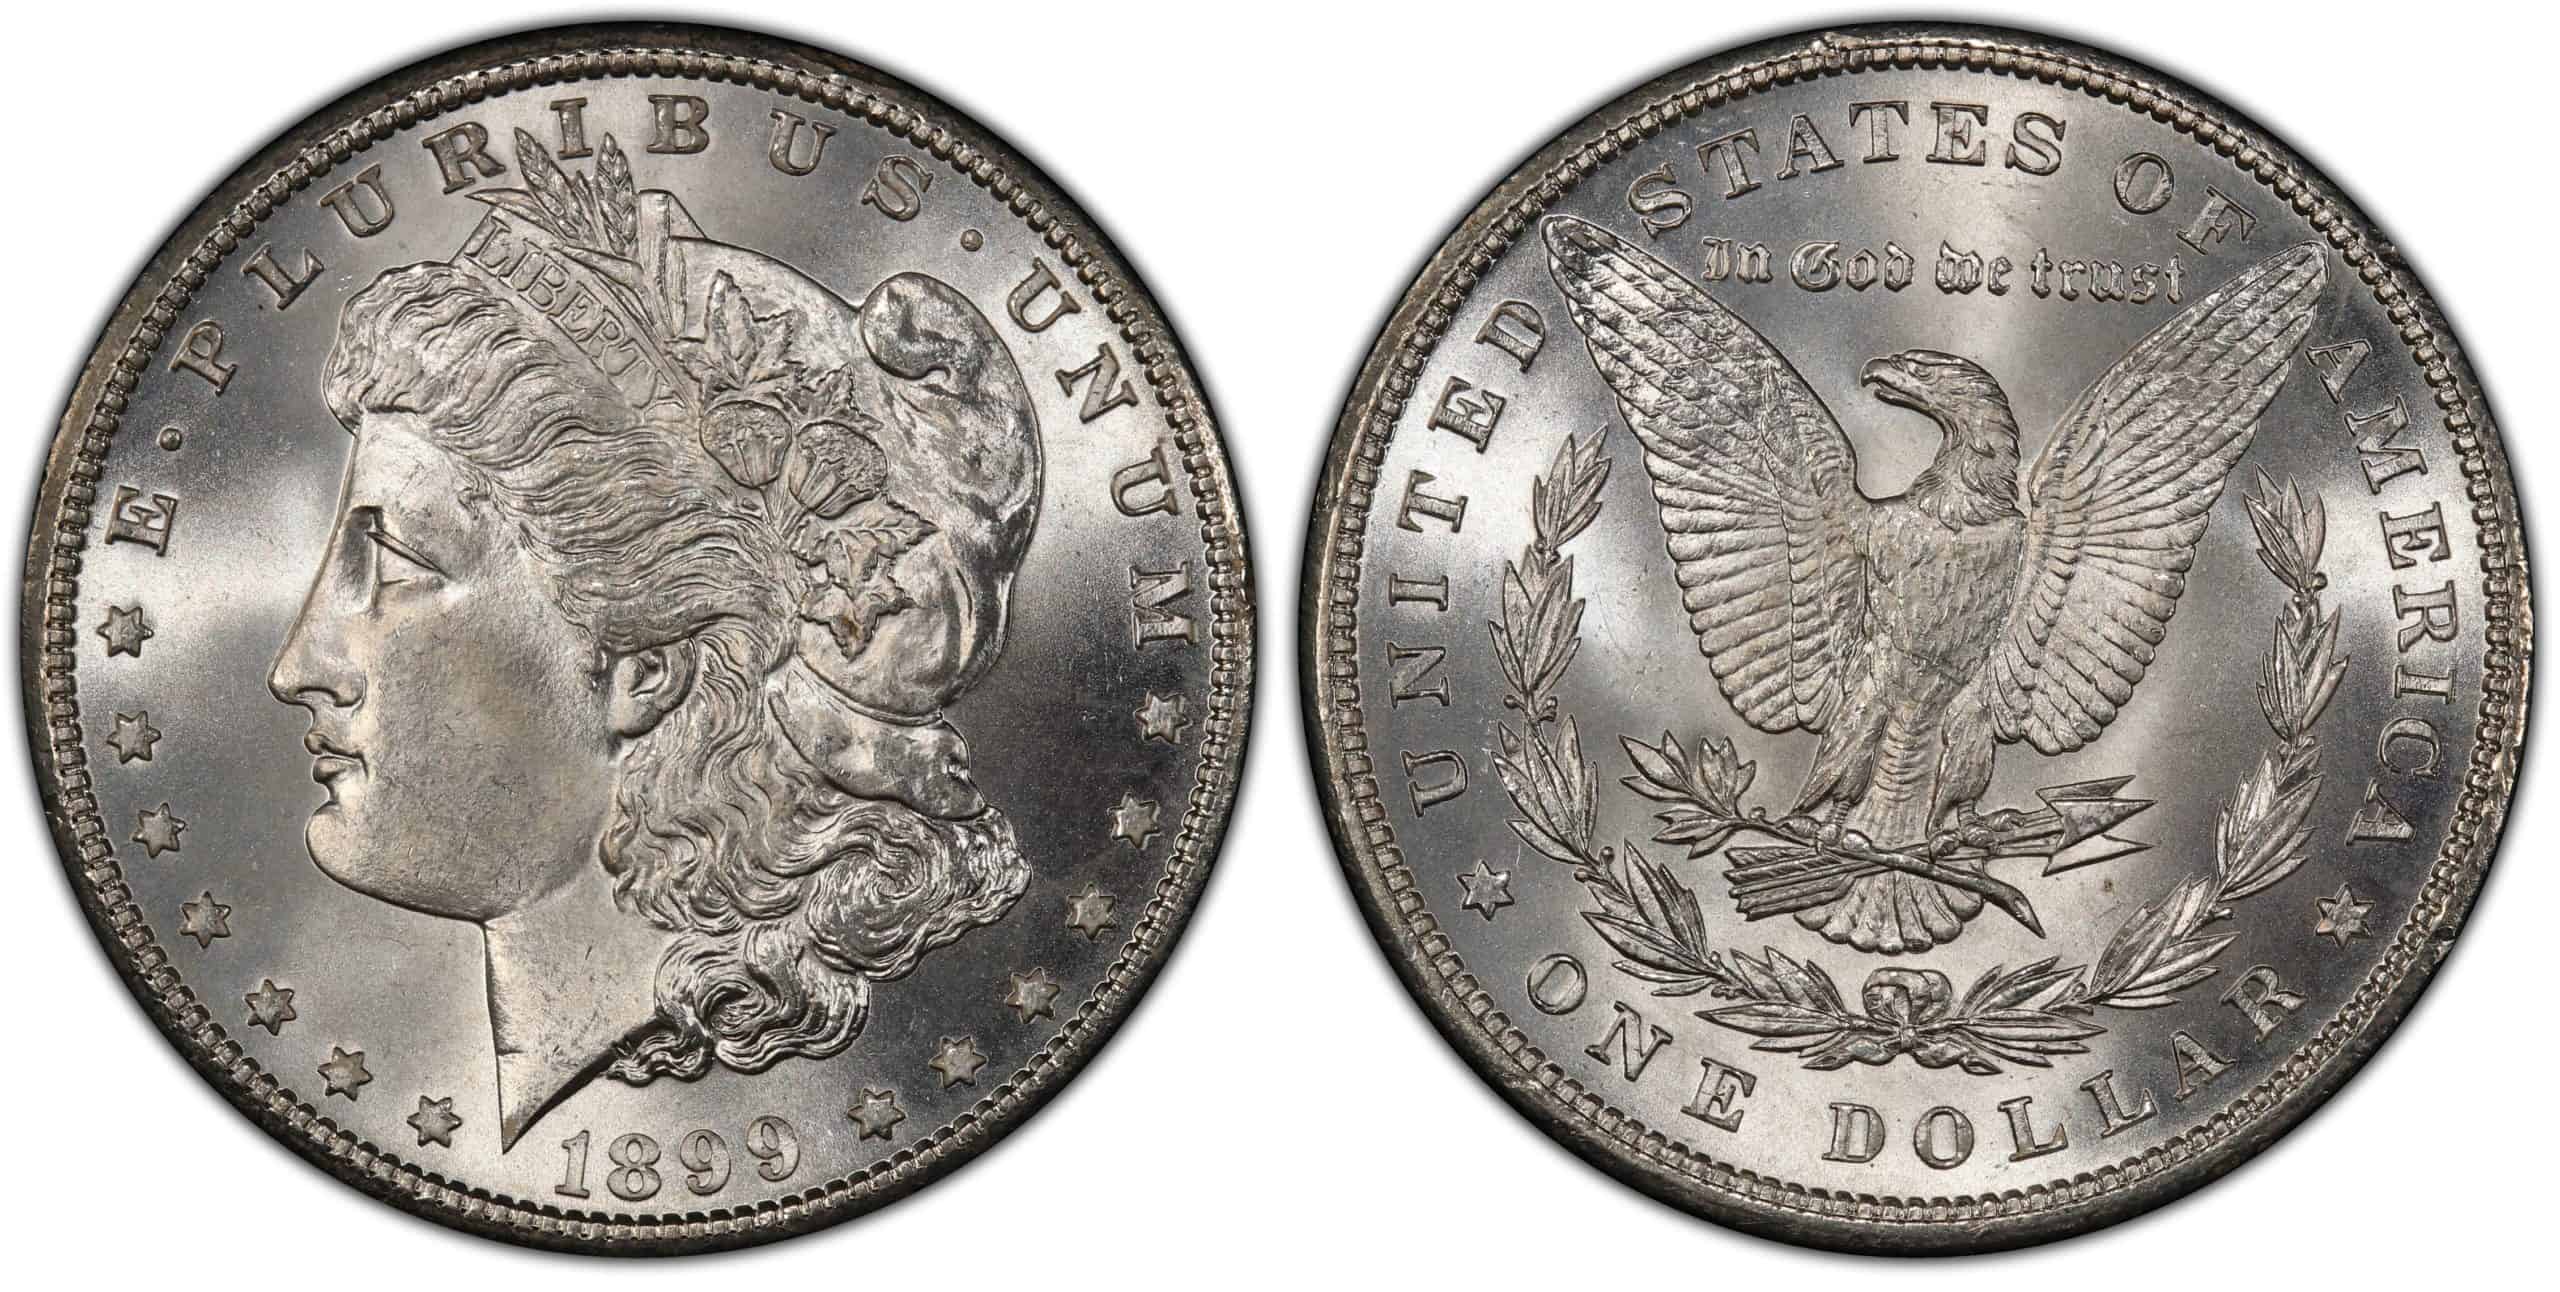 1899 Morgan Silver Dollar Grading